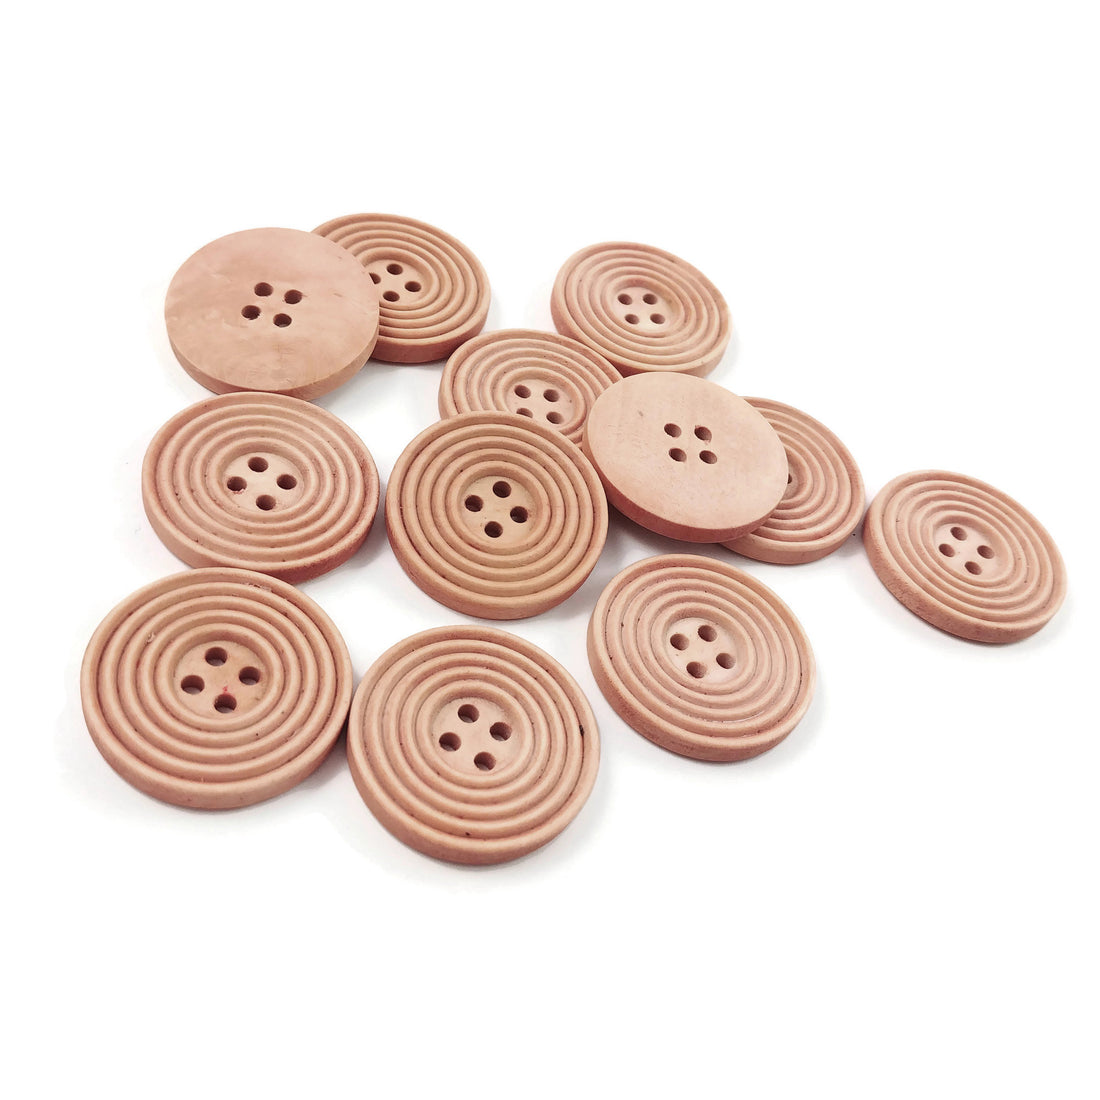 Bouton de bois de 3cm - ensemble de 6 boutons en bois rosé avec cercles